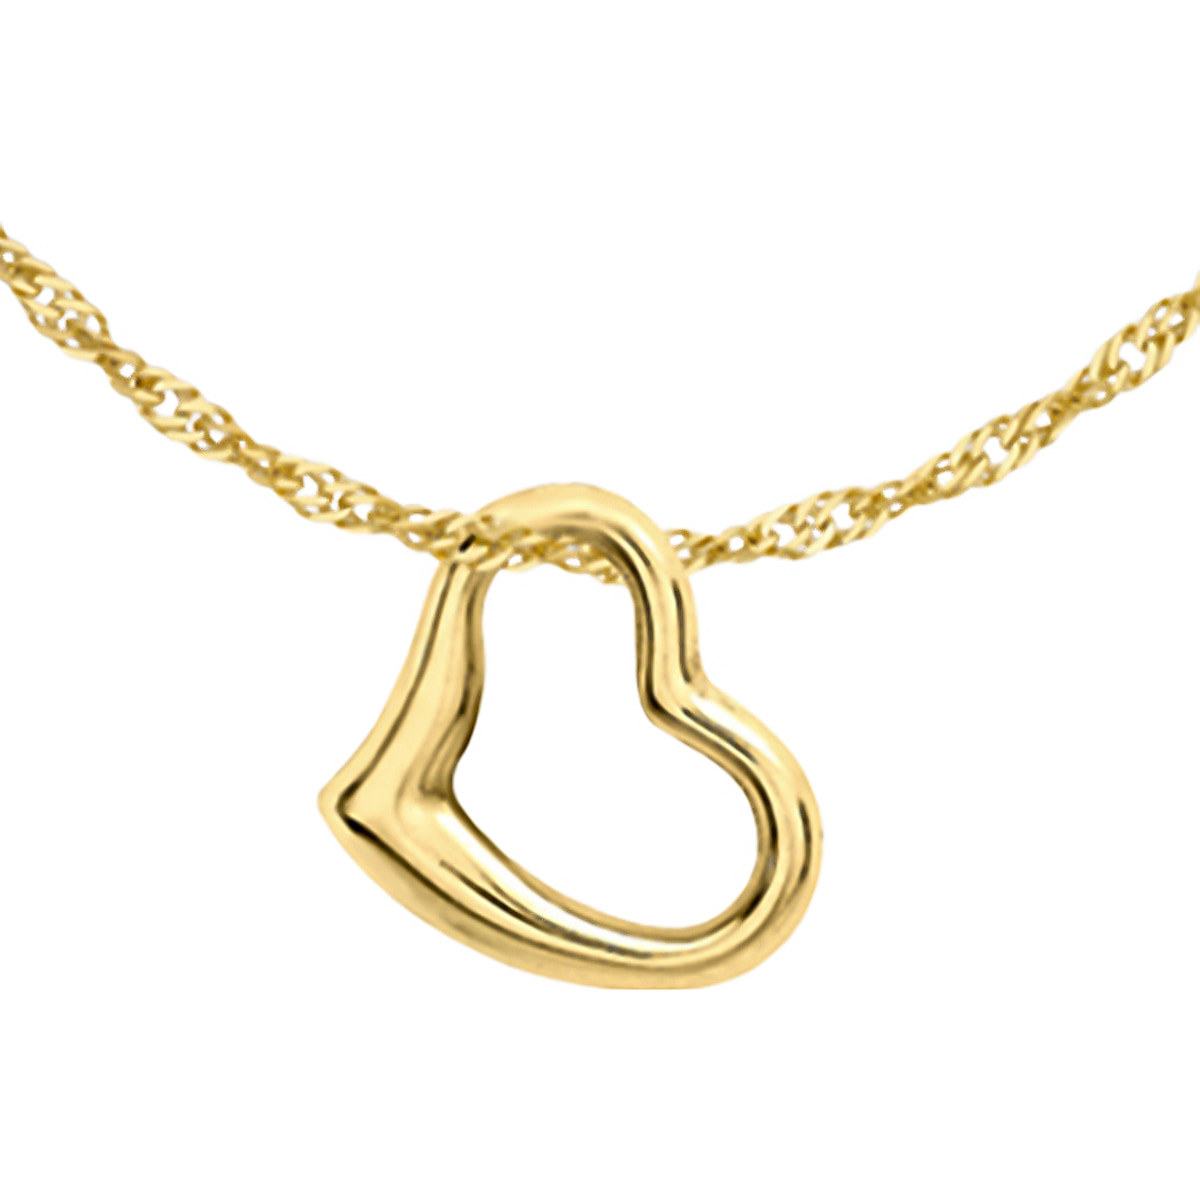 Designer Inspired - 9K Yellow Gold Heart Pendant